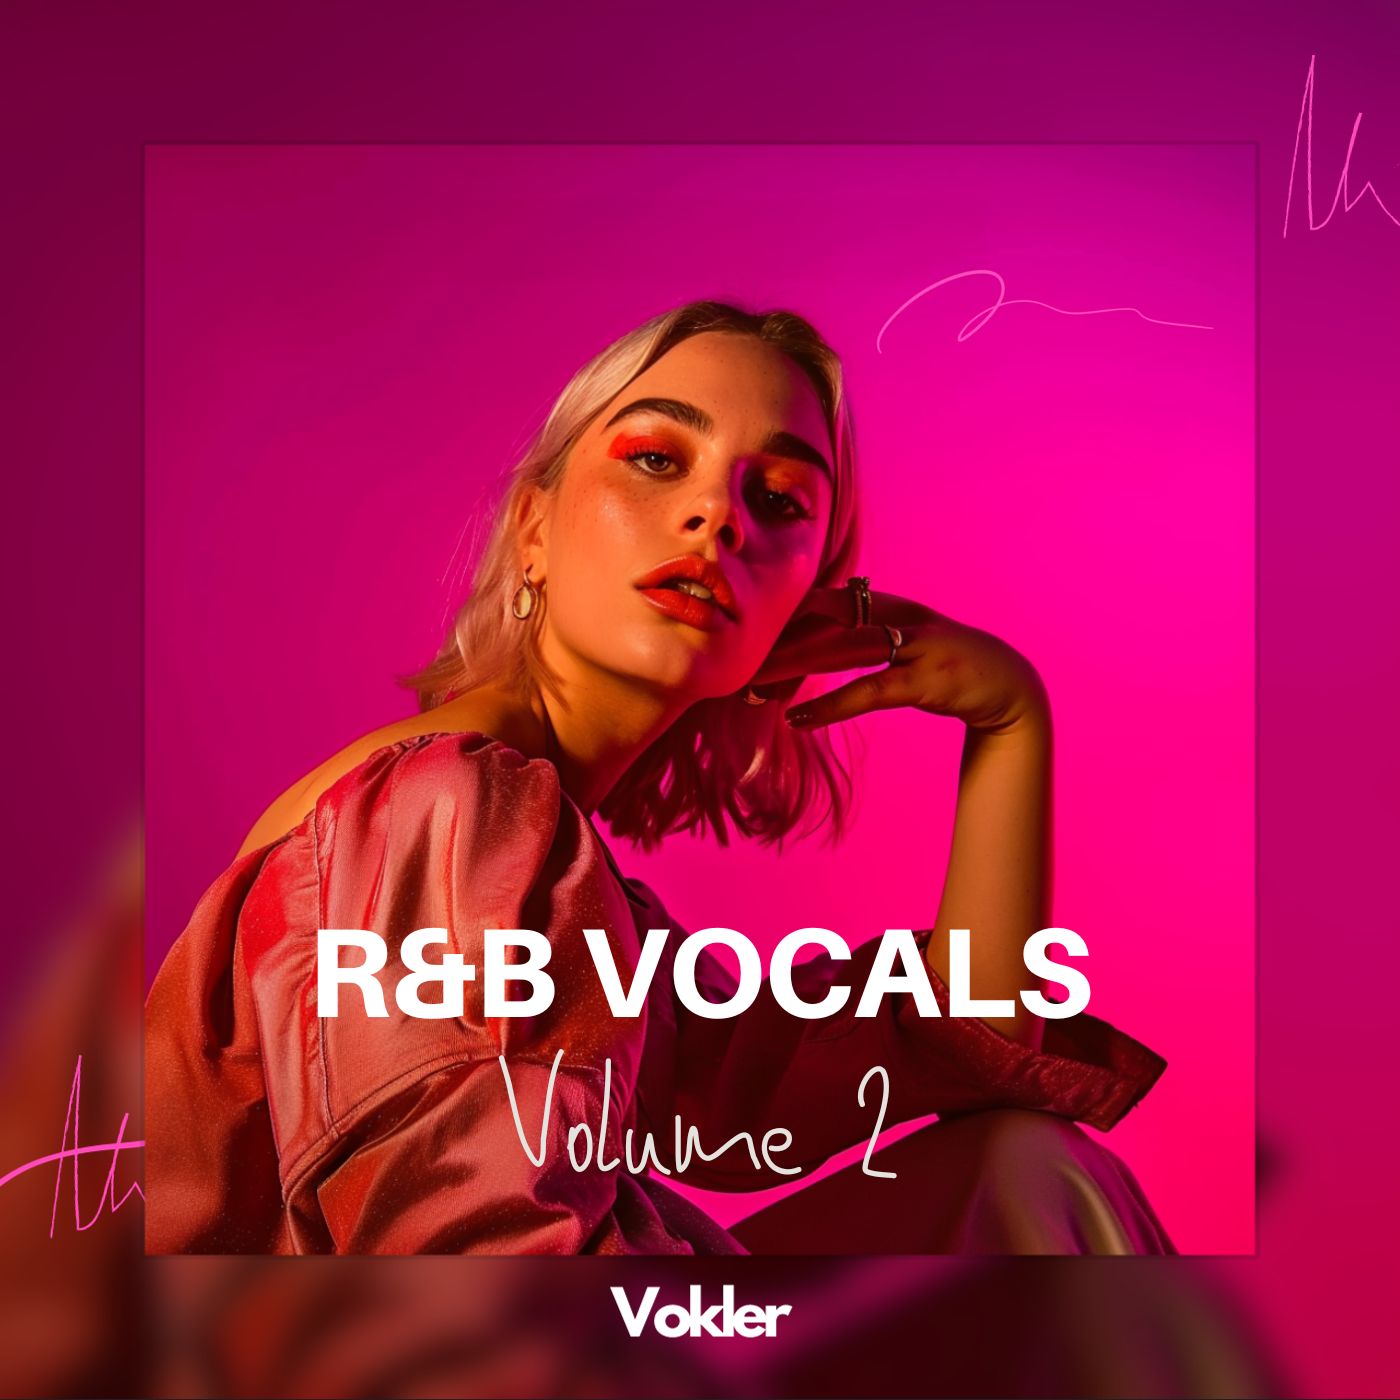 RnB Vocals Vol. 2